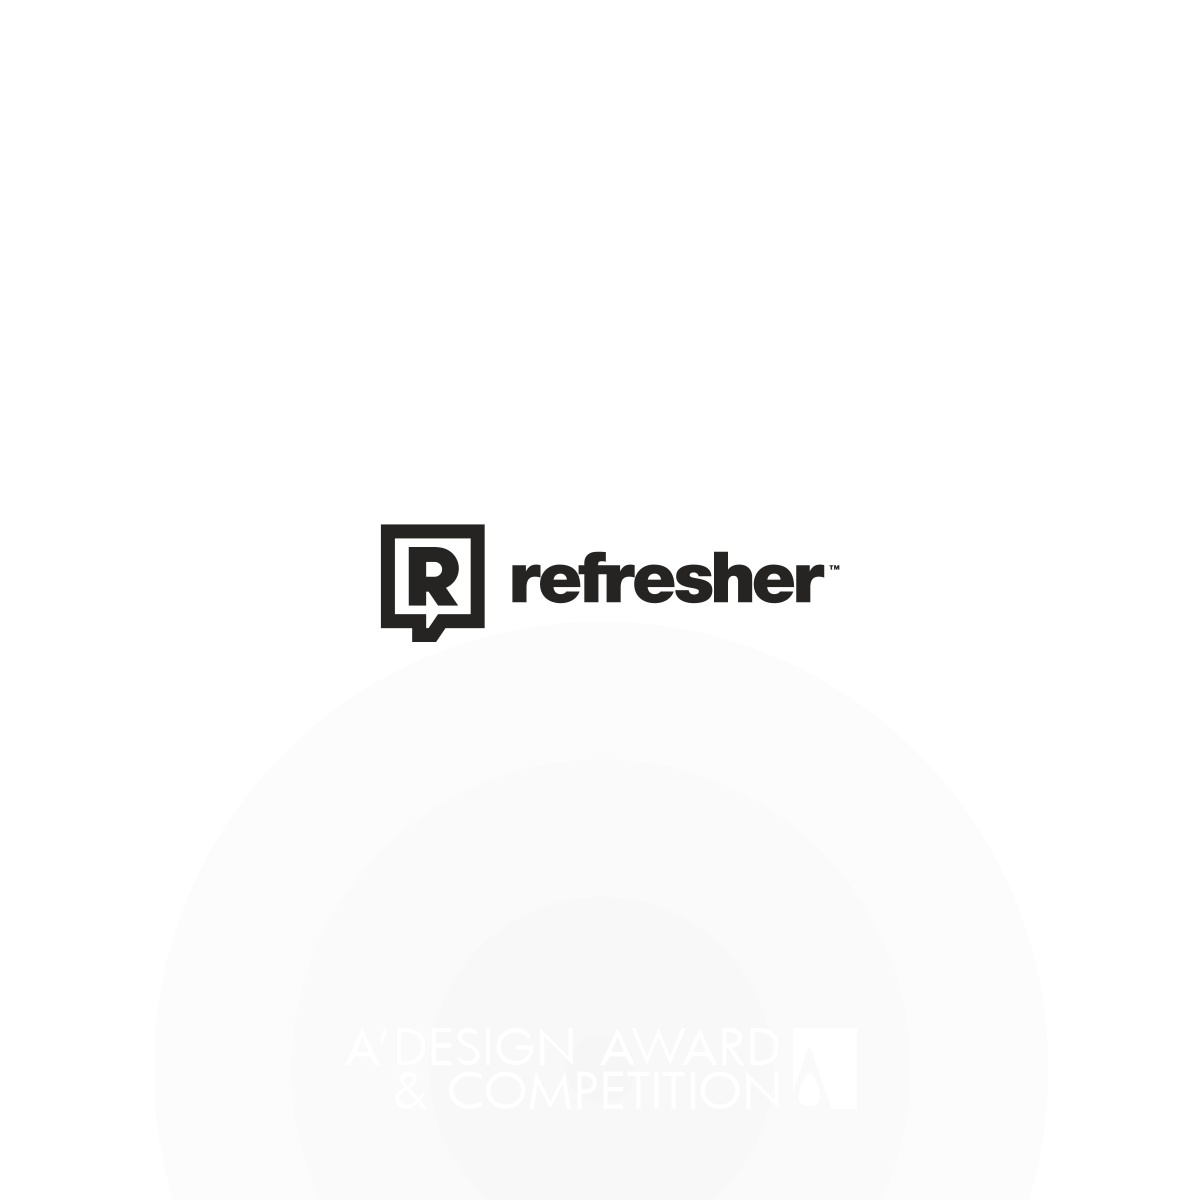 refresher.sk Logo by Miro Kozel